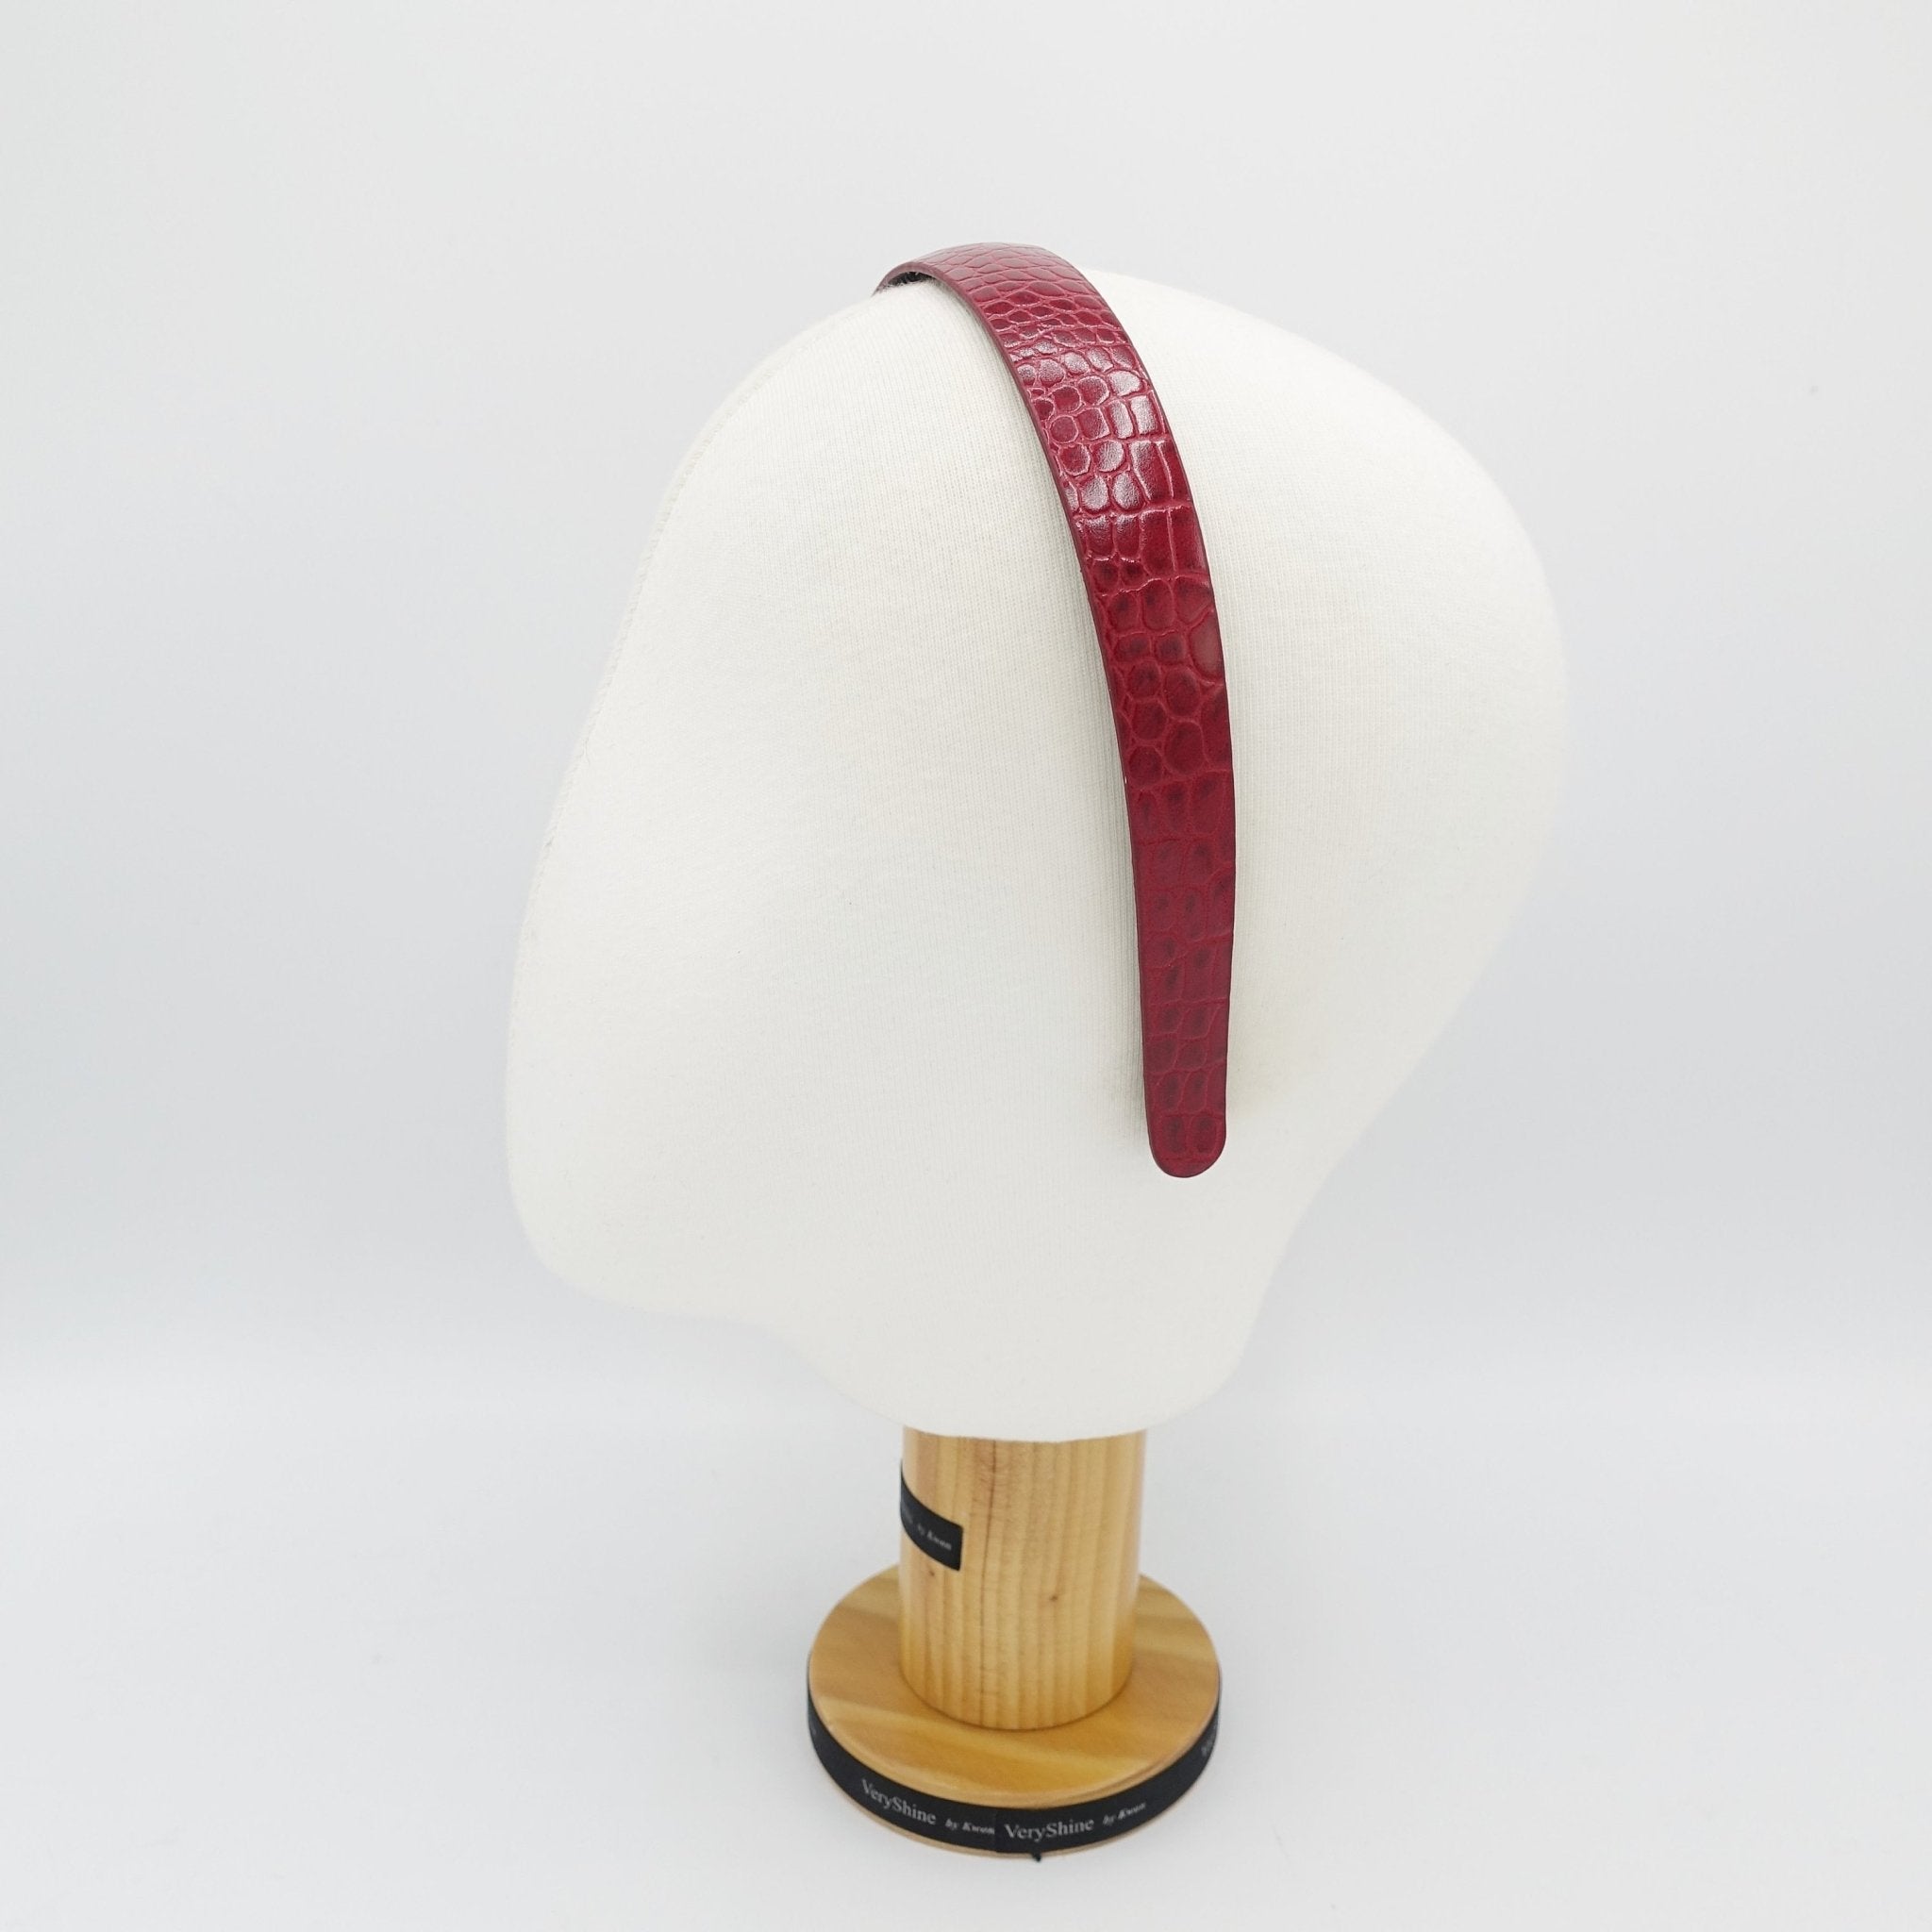 VeryShine python motivated faux leather headband  women fashion hairband